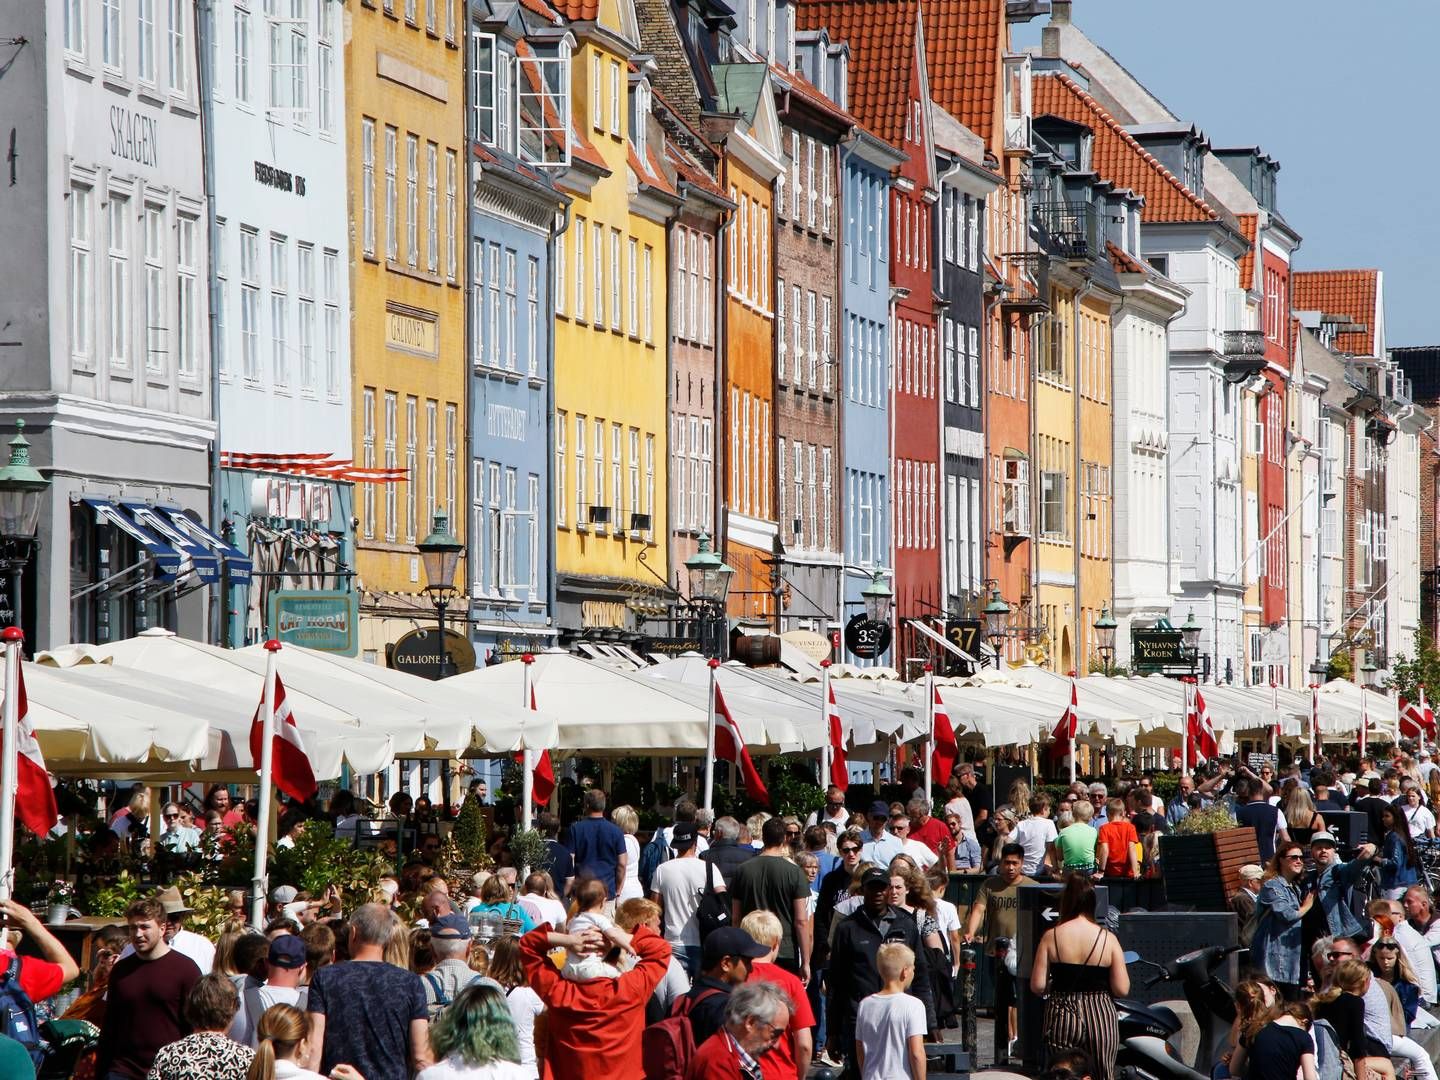 POPULÆRT: Havnekvarteret Nyhavn i København er et populært turistmål. | Foto: Erik Johansen / NTB